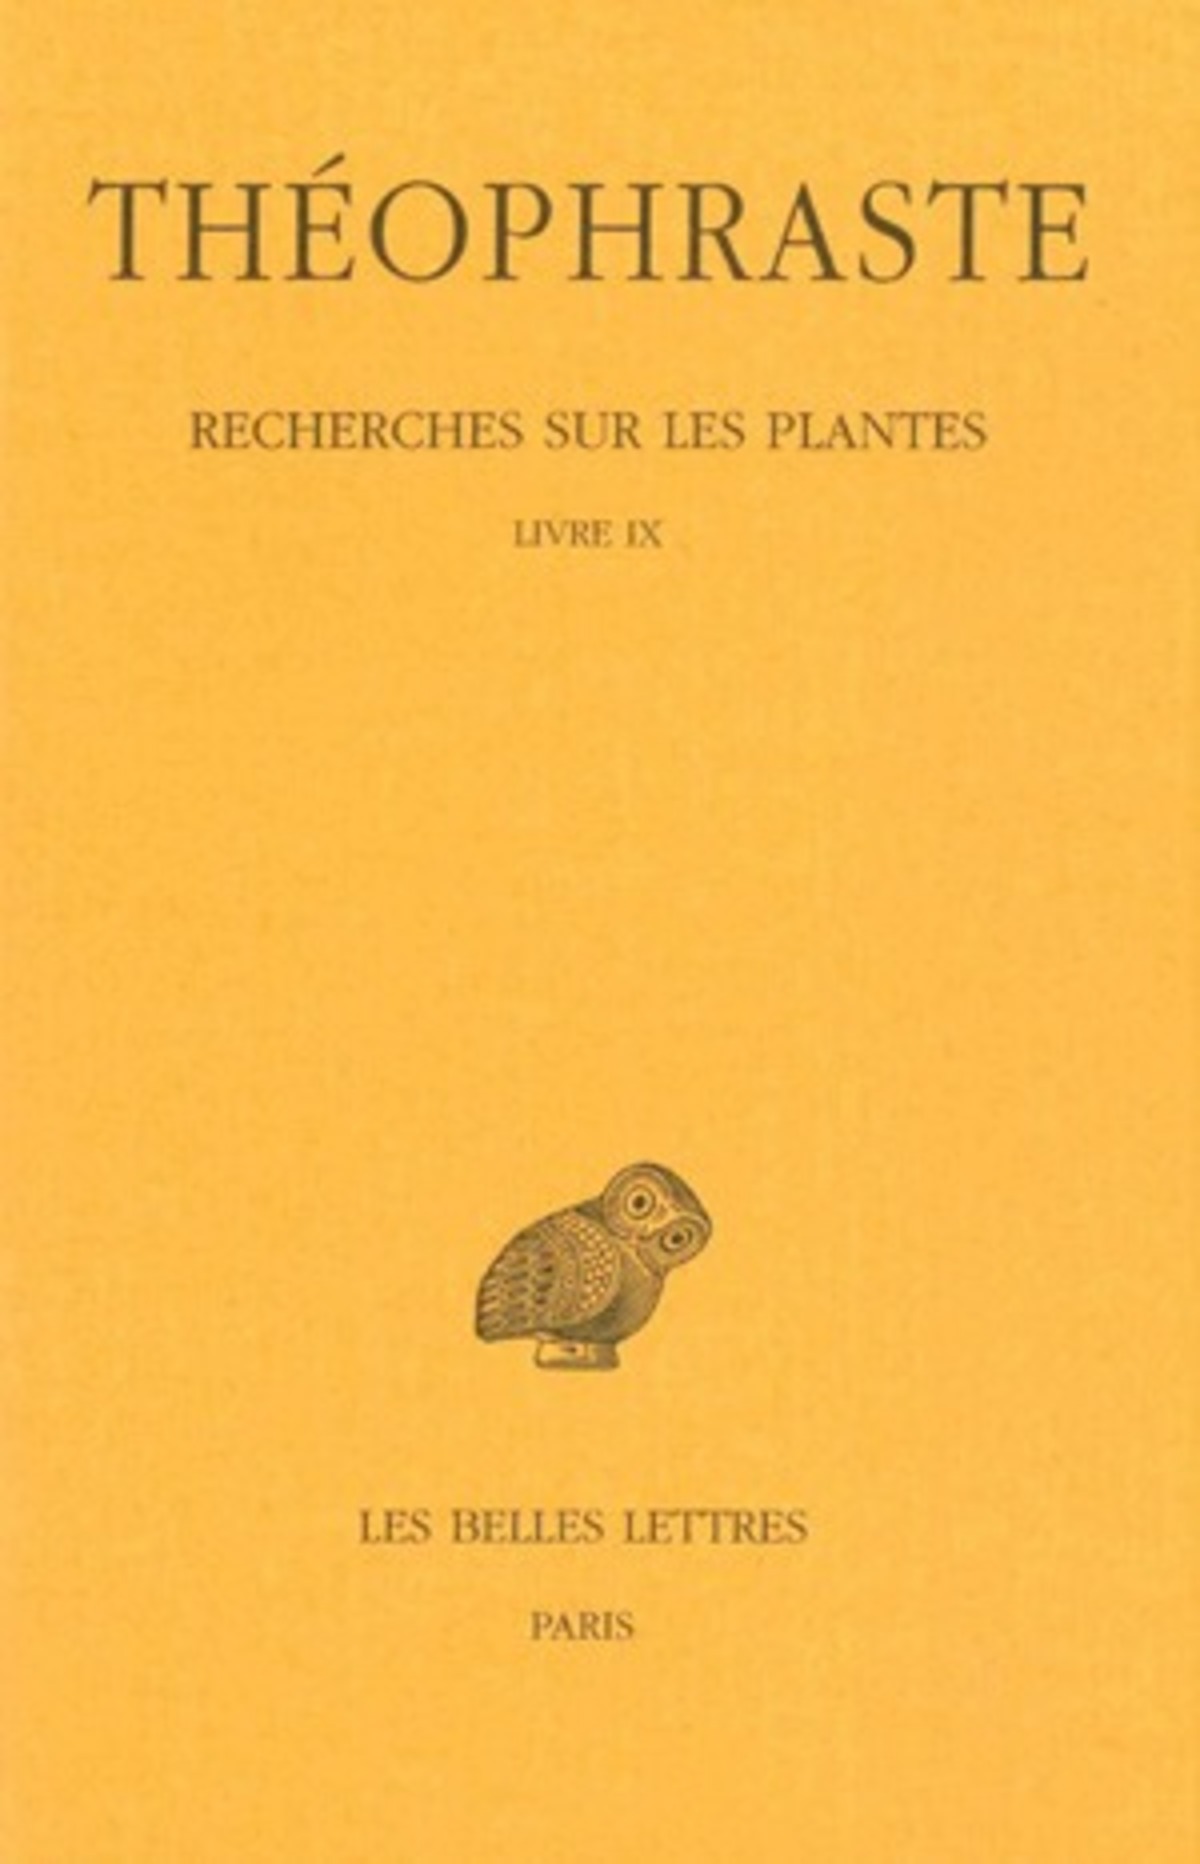 Recherches sur les plantes. Tome V : Livre IX